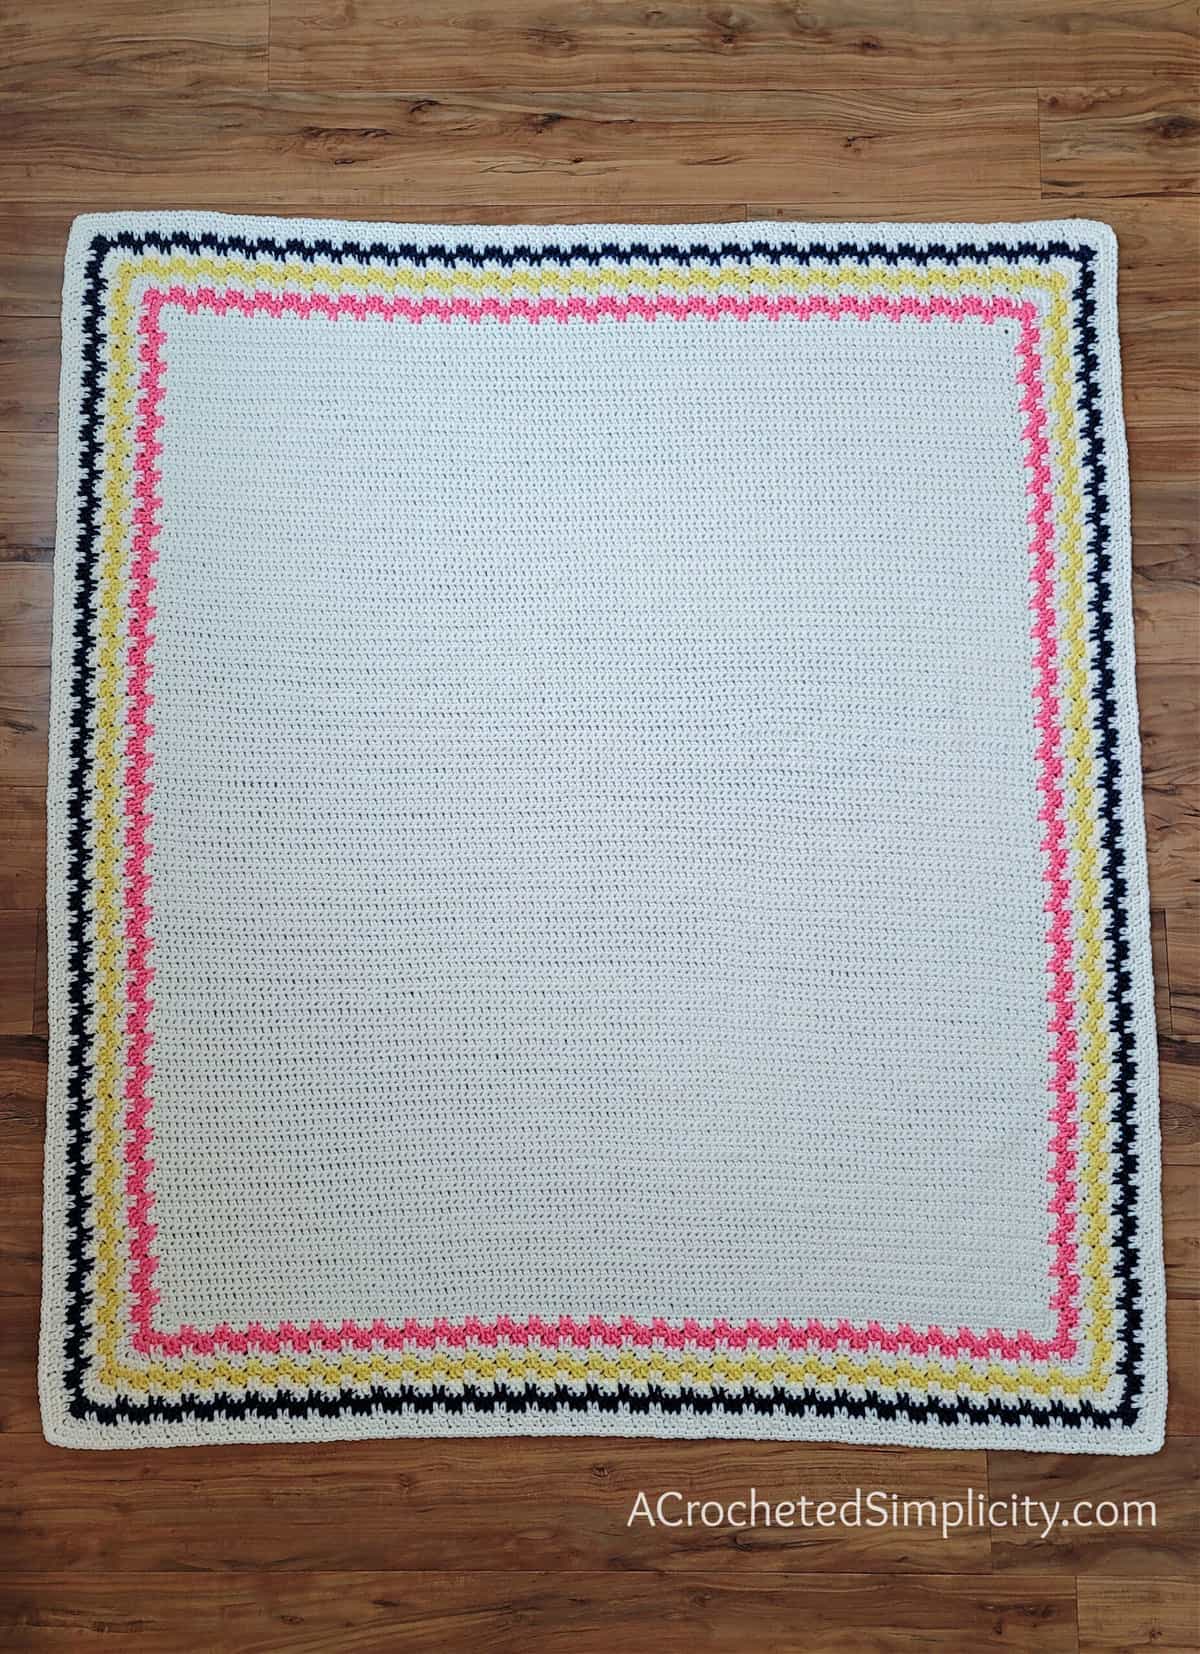 Free Crochet Blanket Pattern - Jossalyn's Afghan by A Crocheted Simplicity #freecrochetpattern #freecrochetblanketpattern #crochetlapghanpattern #crochetblanketpattern #crochet #crochetlapghan #crochetafghan #crochetpuffstitch #homemadeafghan #crochettexture